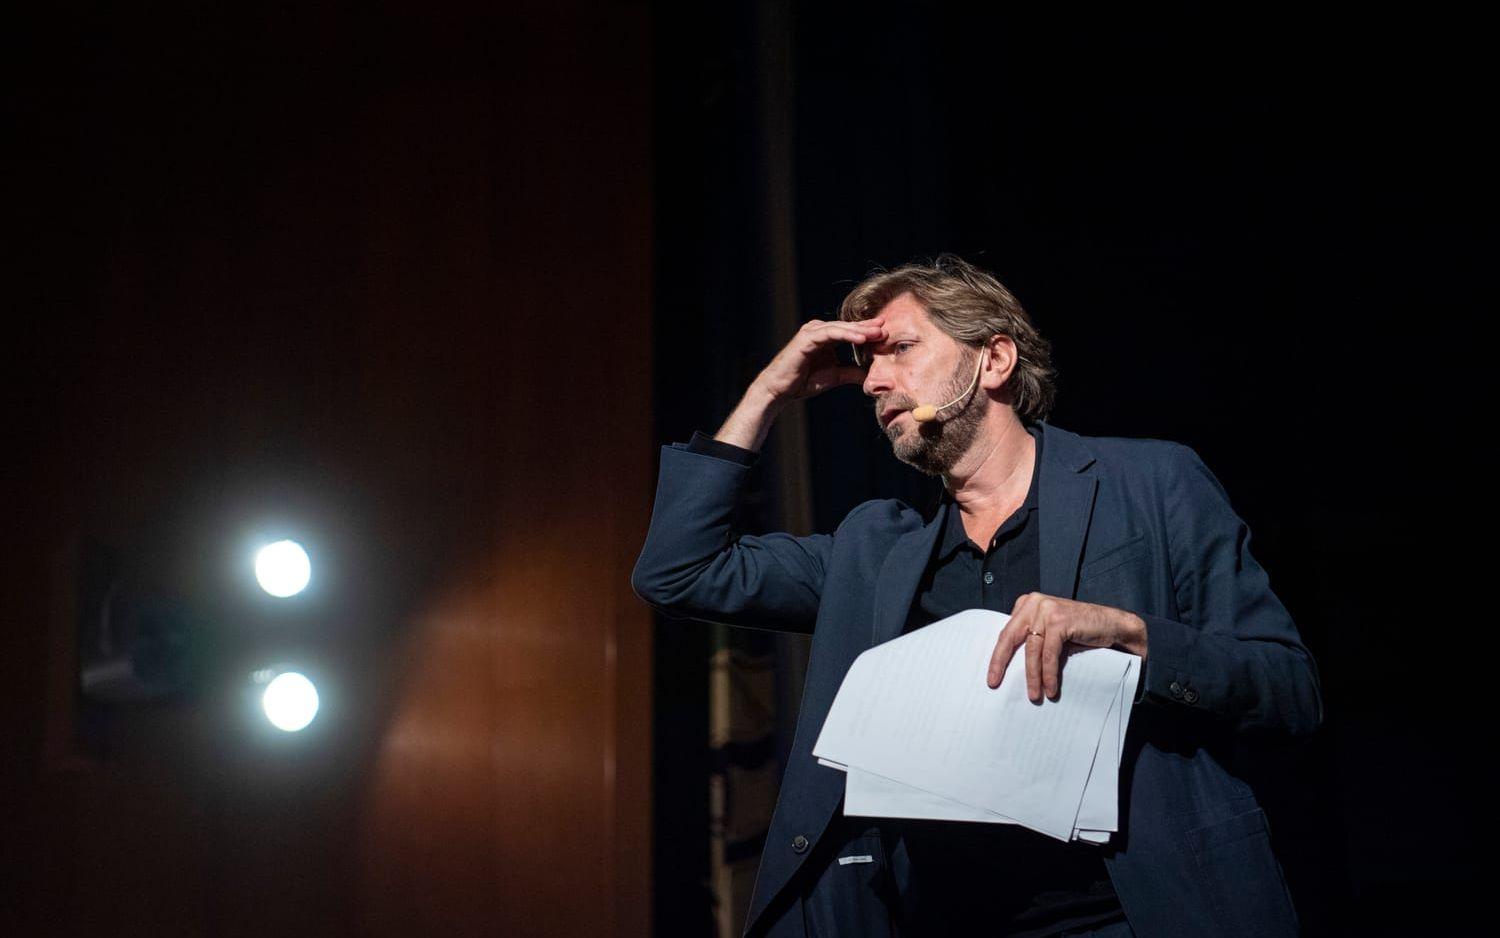 Ruben Östlund regisserar publiken på filmfestivalen på Draken under visningen av hans film ”Triangle of sadness”.